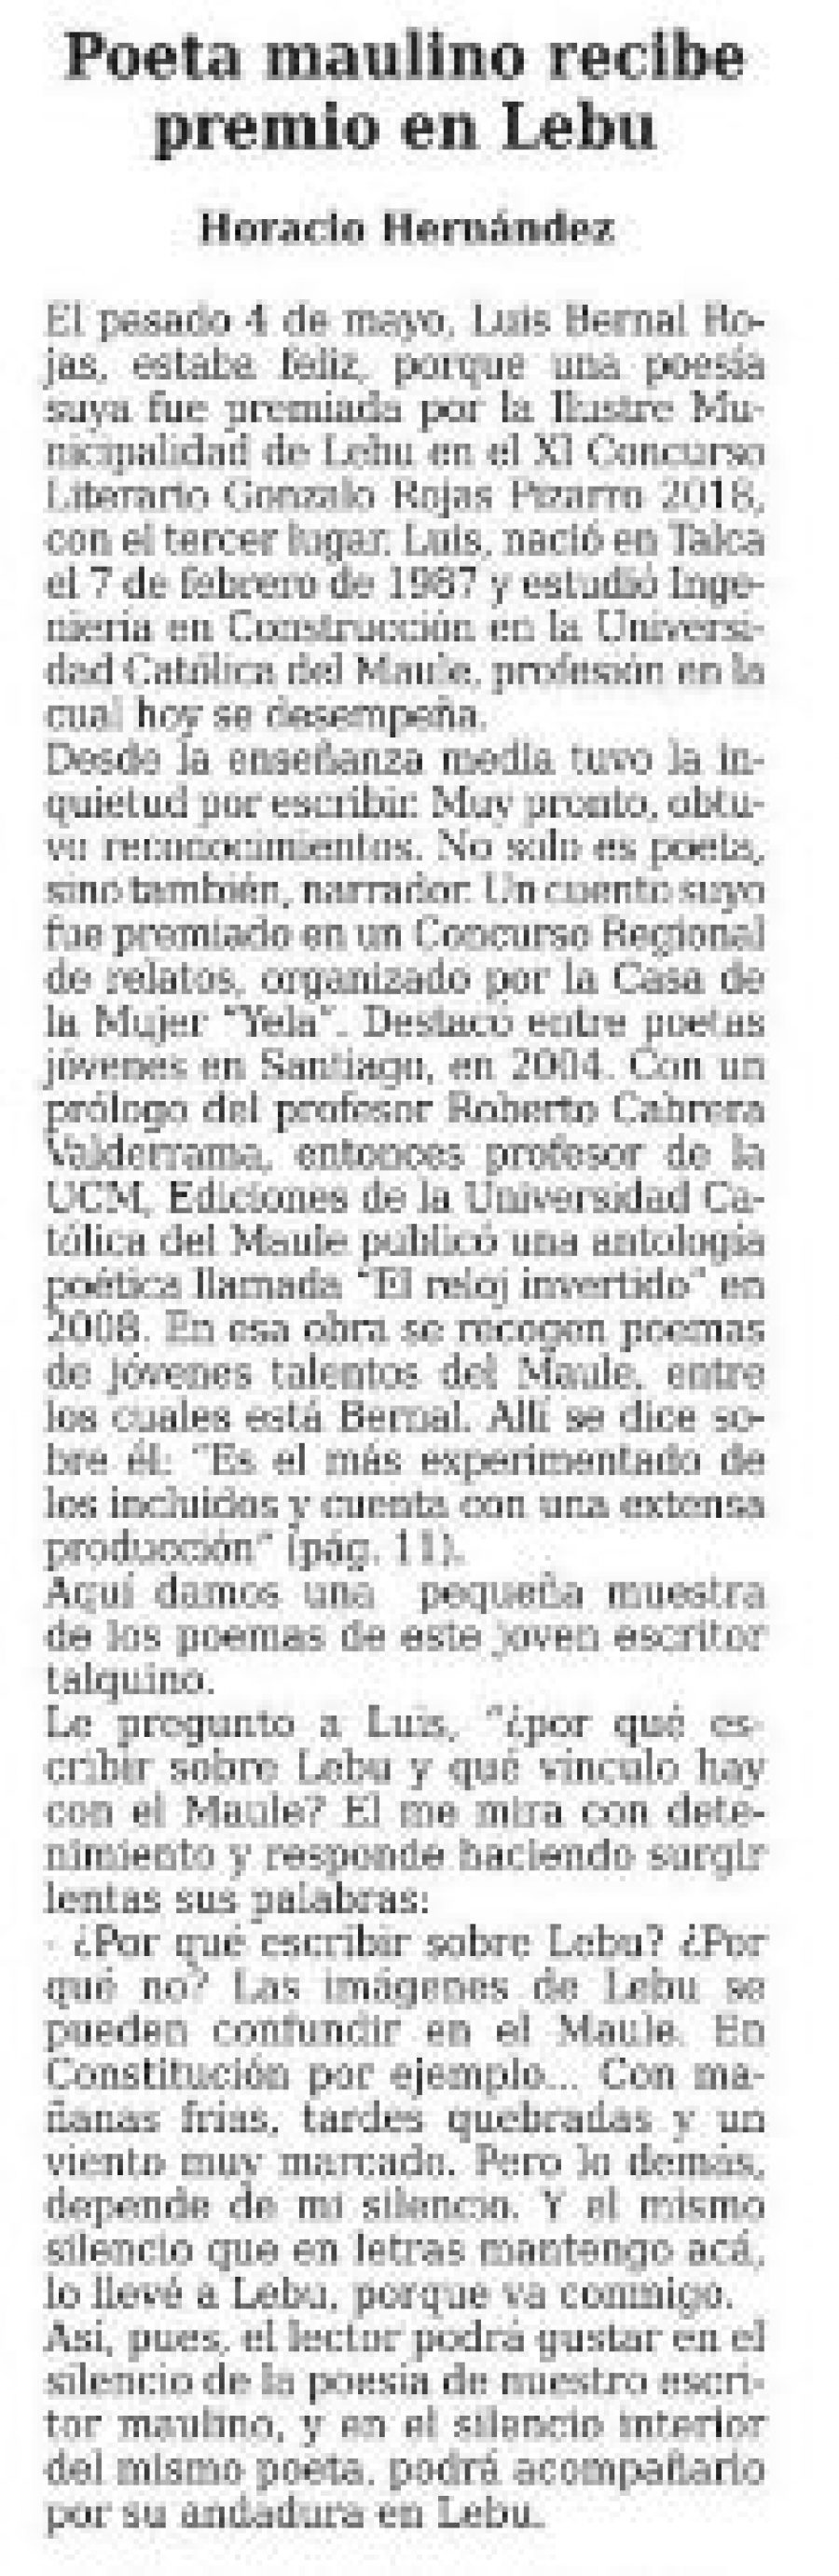 27 de mayo en Diario El Centro: “Poeta maulino recibe premio en Lebu”